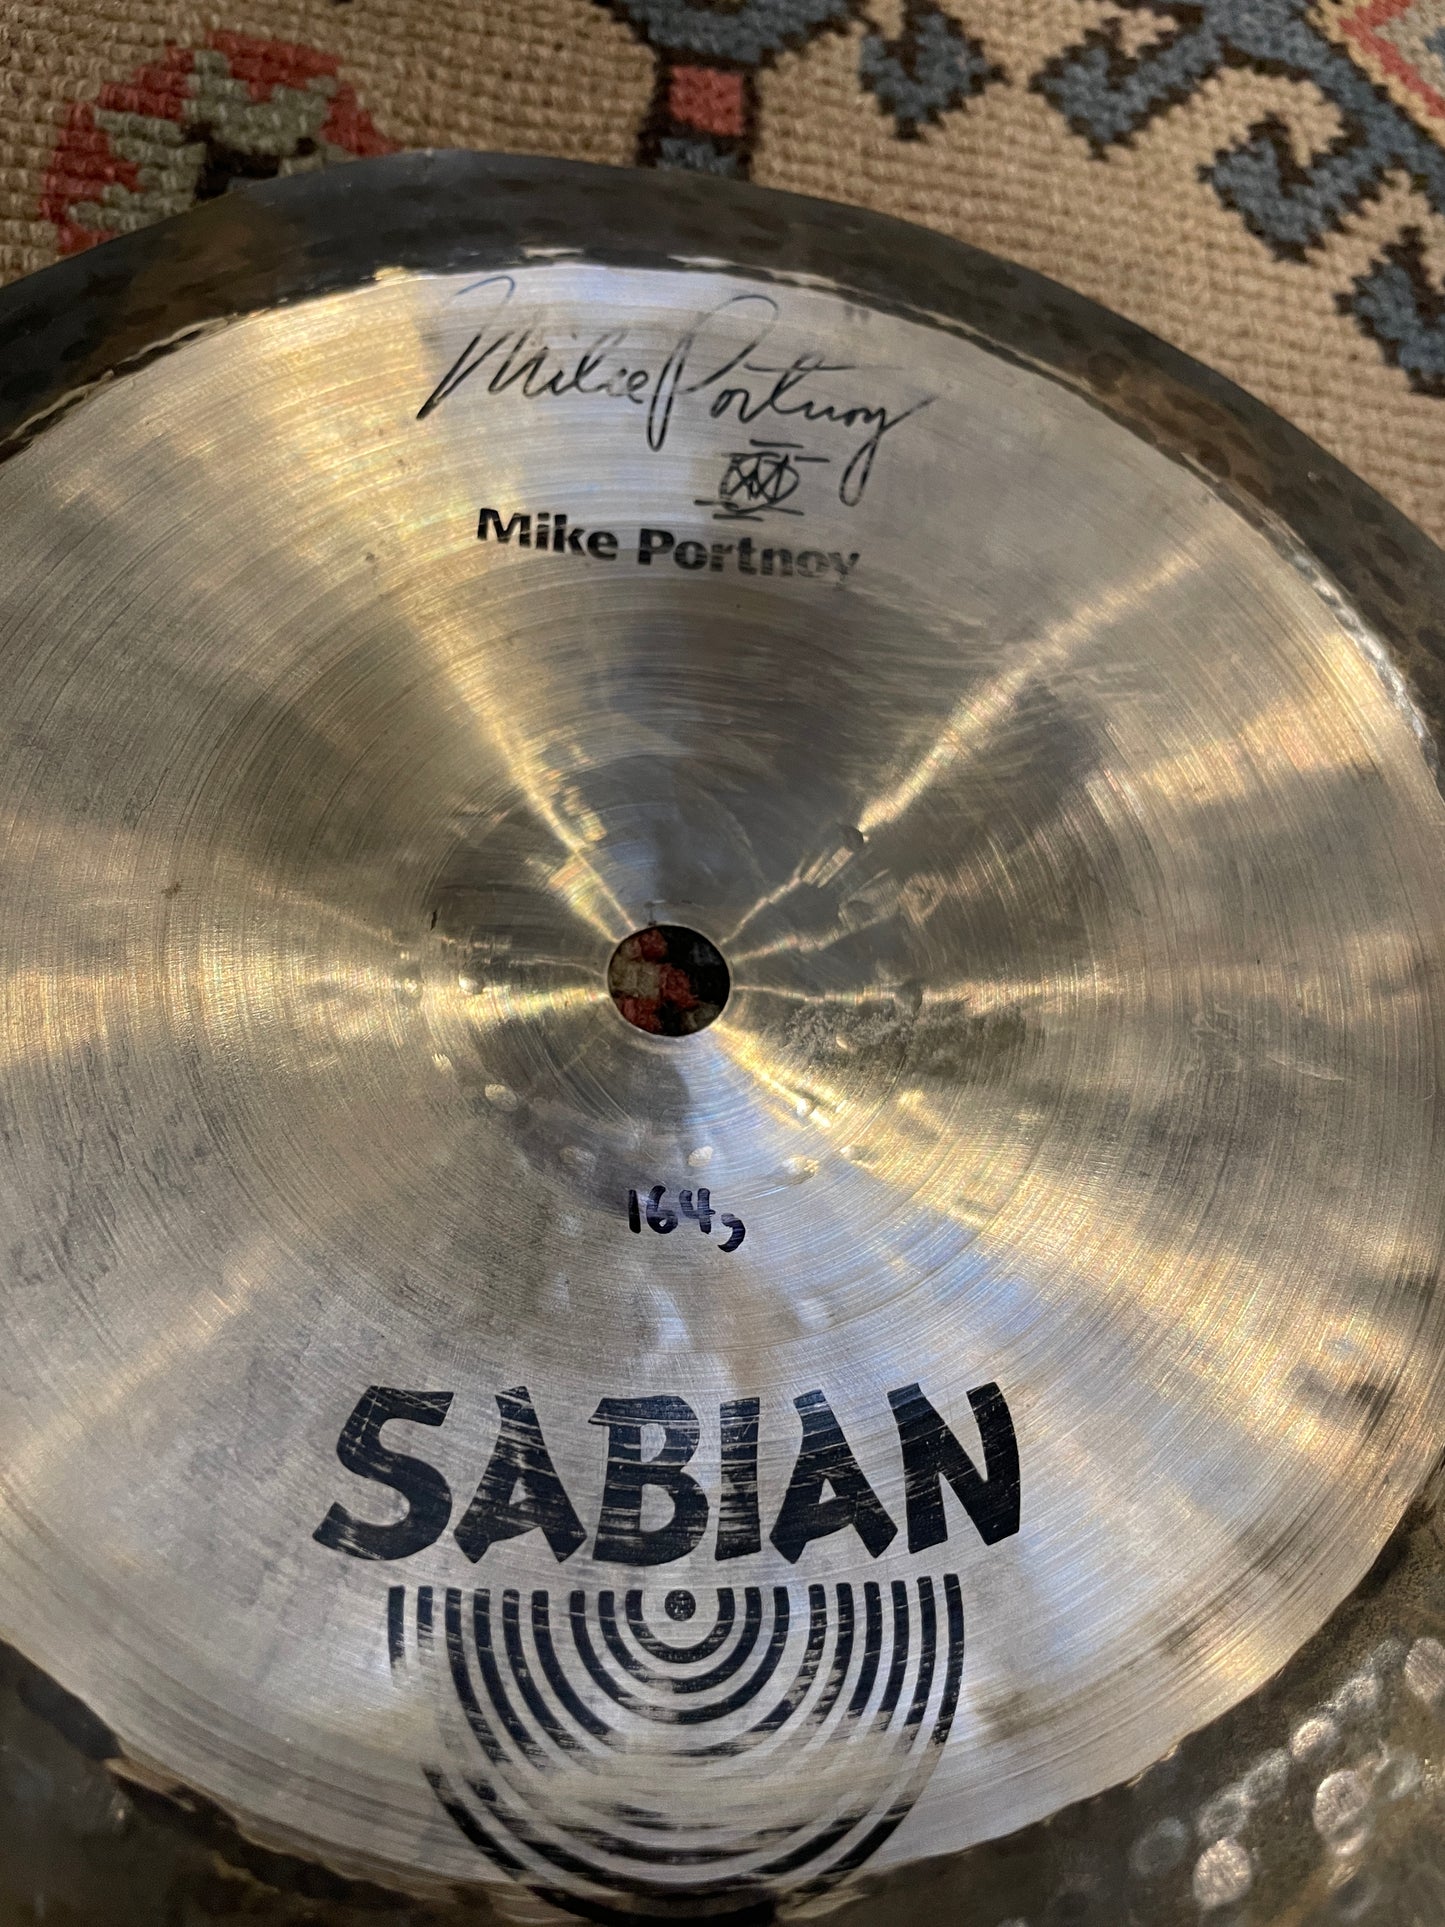 8" Sabian Signature Mike Portnoy Max Stax China Kang Cymbal 164g